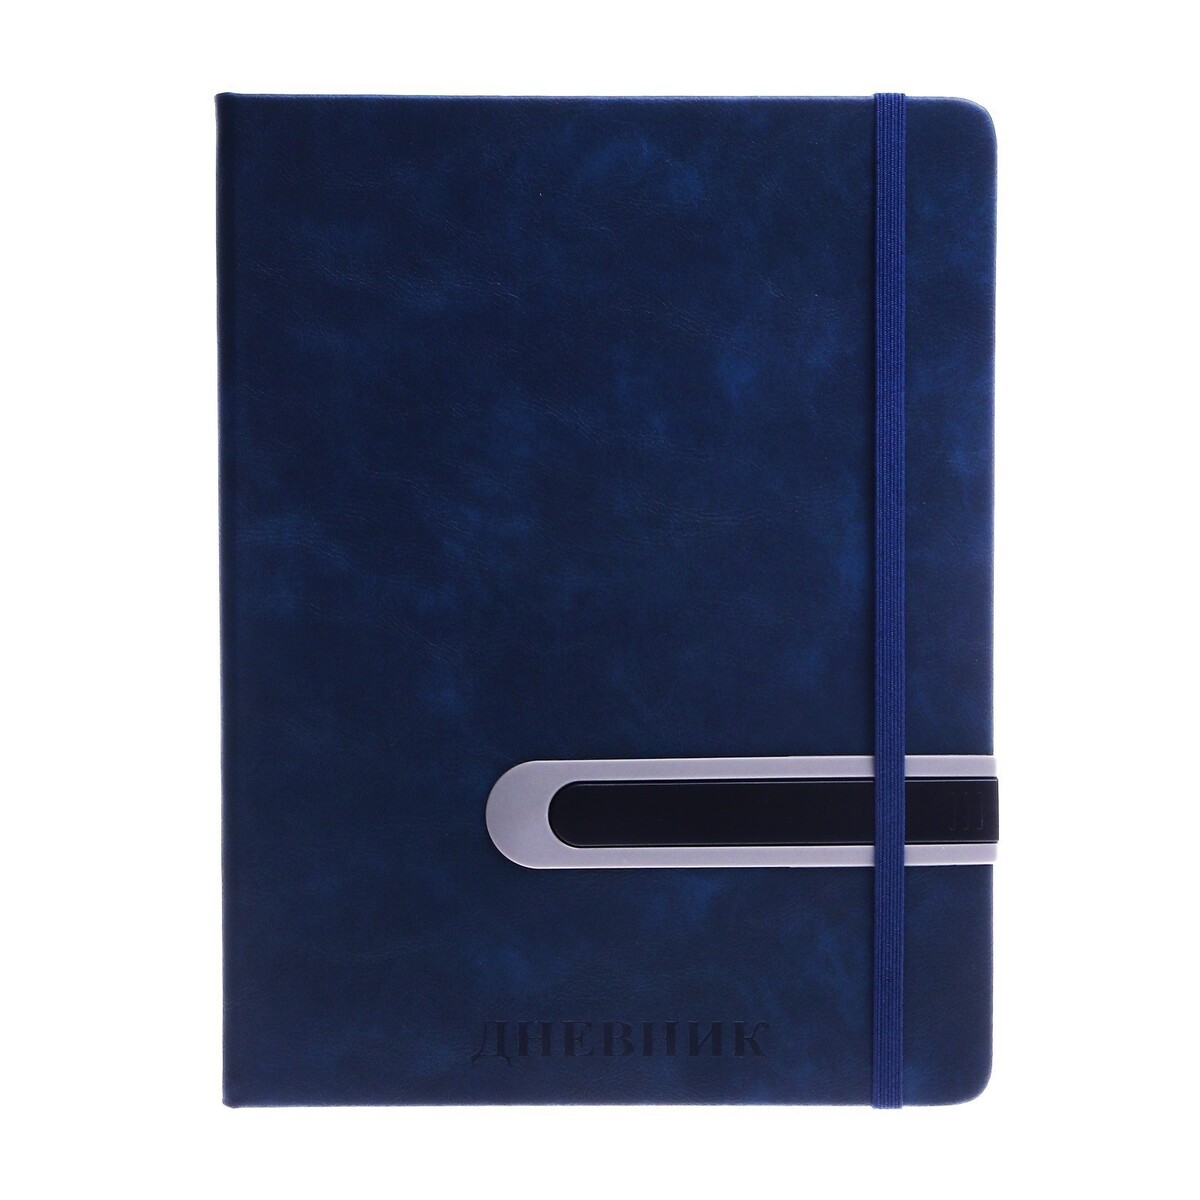 Дневник школьный, 5-11 класс, обложка пвх, с ручкой, на резинке No brand, цвет синий 06933422 - фото 1